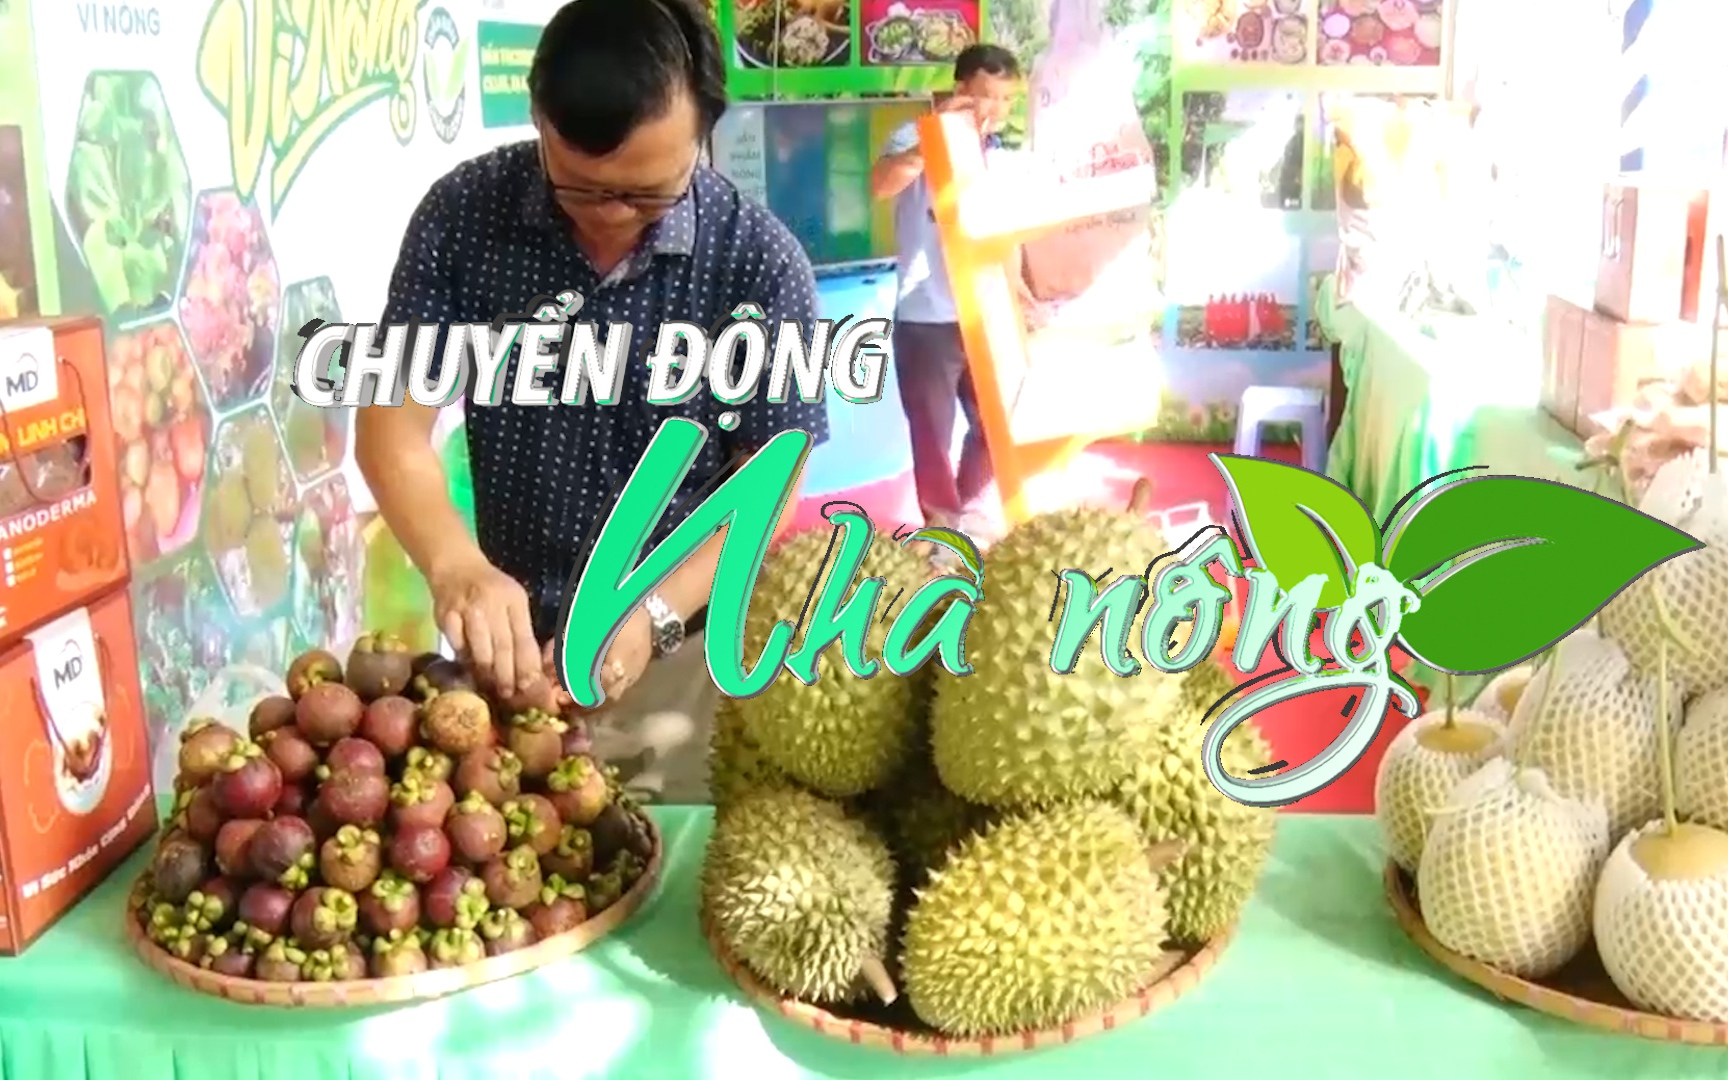 Chuyển động Nhà nông 16/6: Khai mạc Lễ hội trái cây Long Khánh tại Đồng Nai